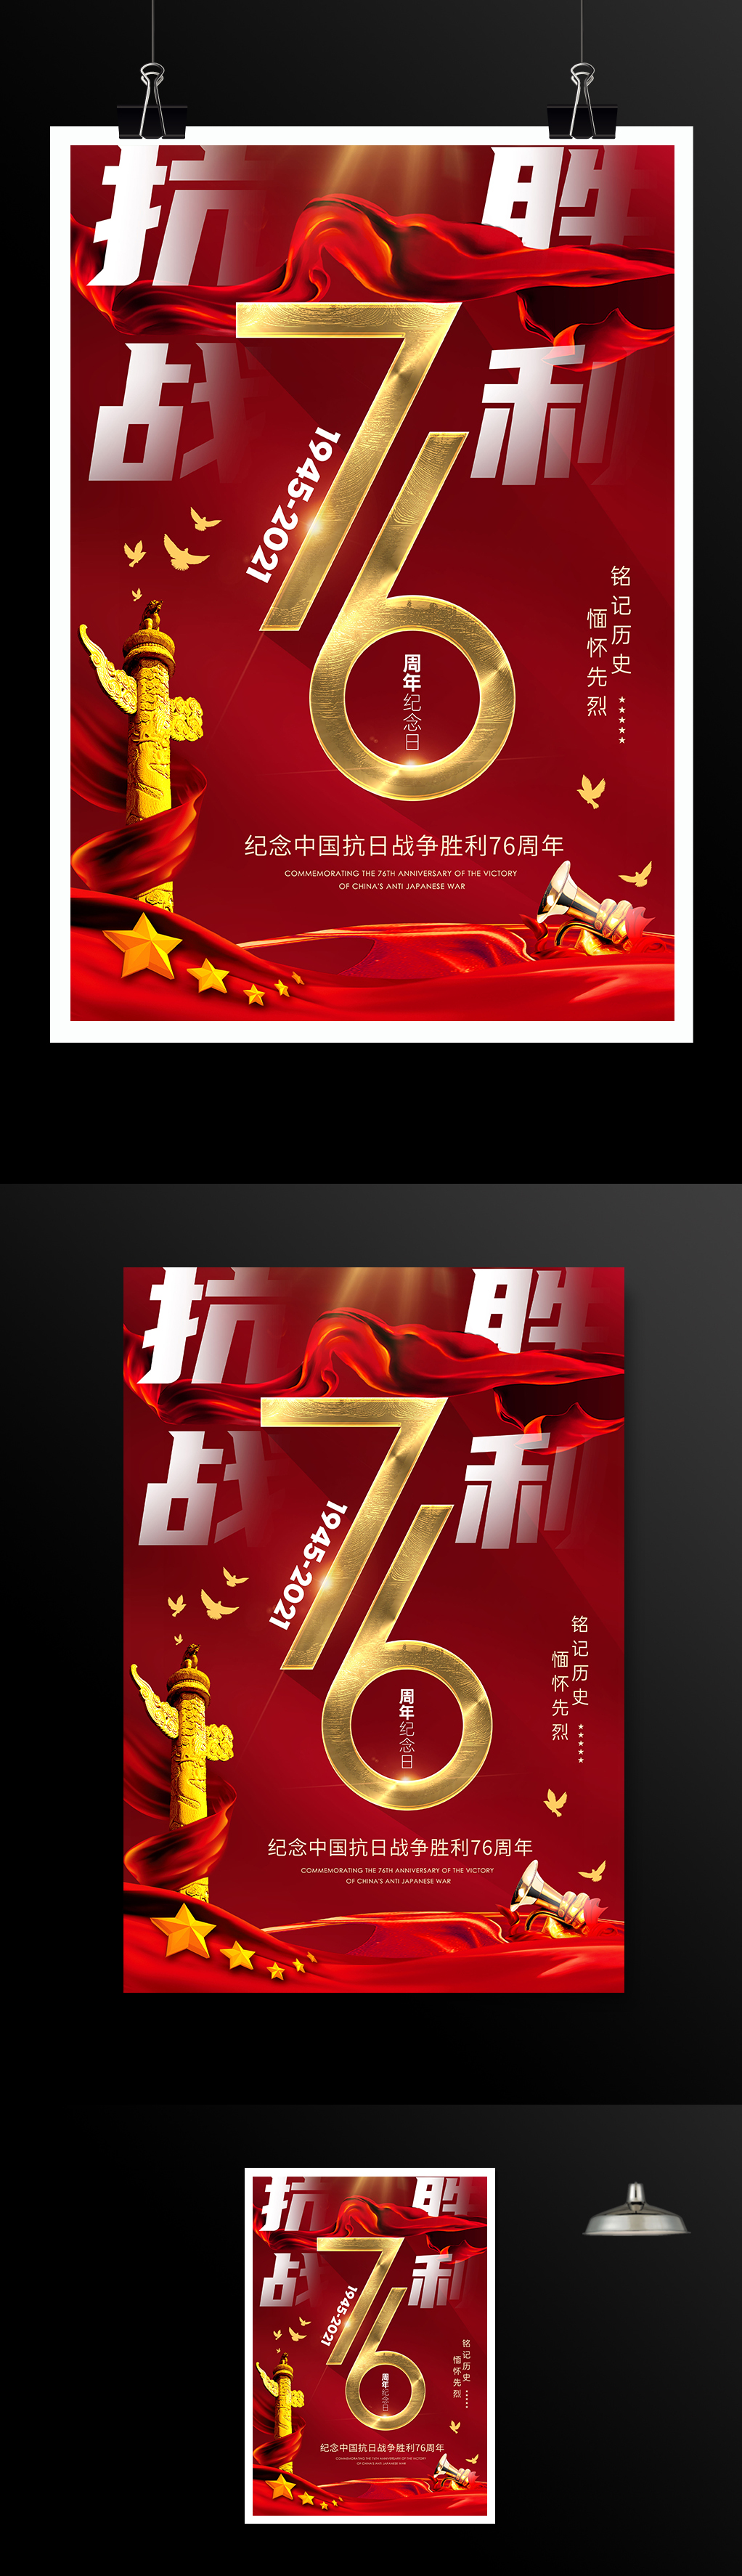 红色创意抗战胜利76周年活动背景海报